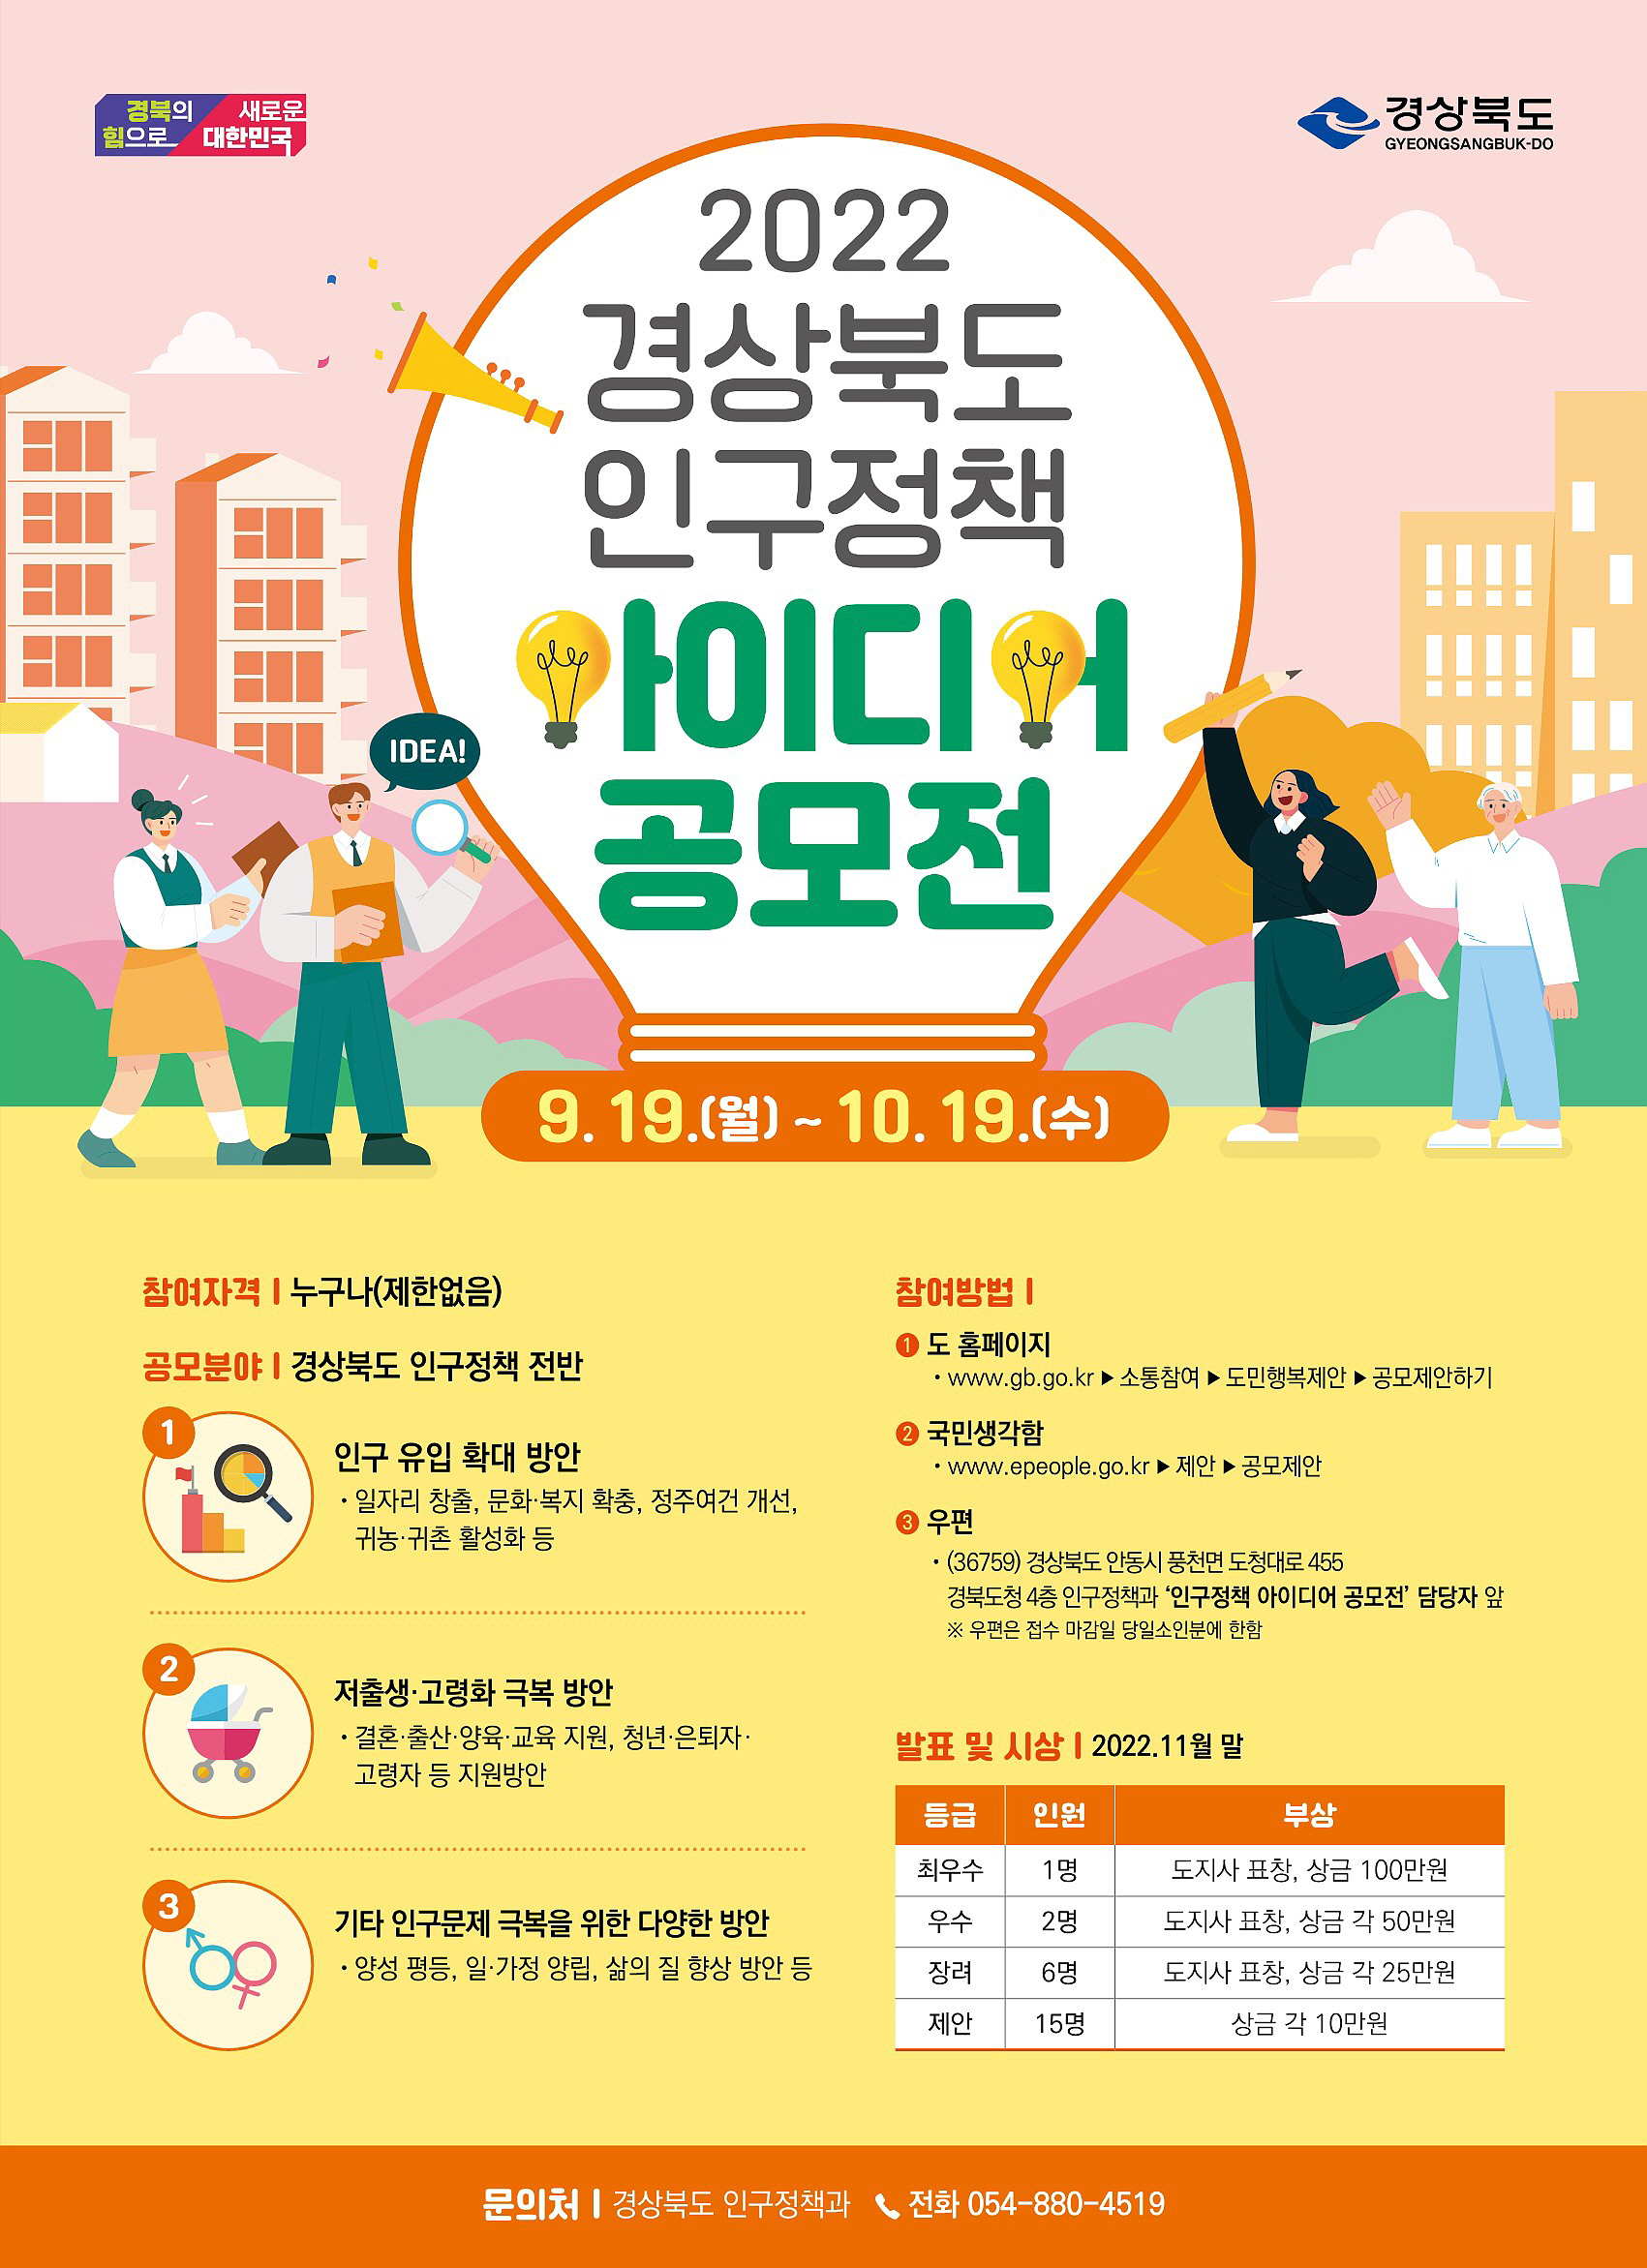 경북도, 인구정책 아이디어 공모전 개최  